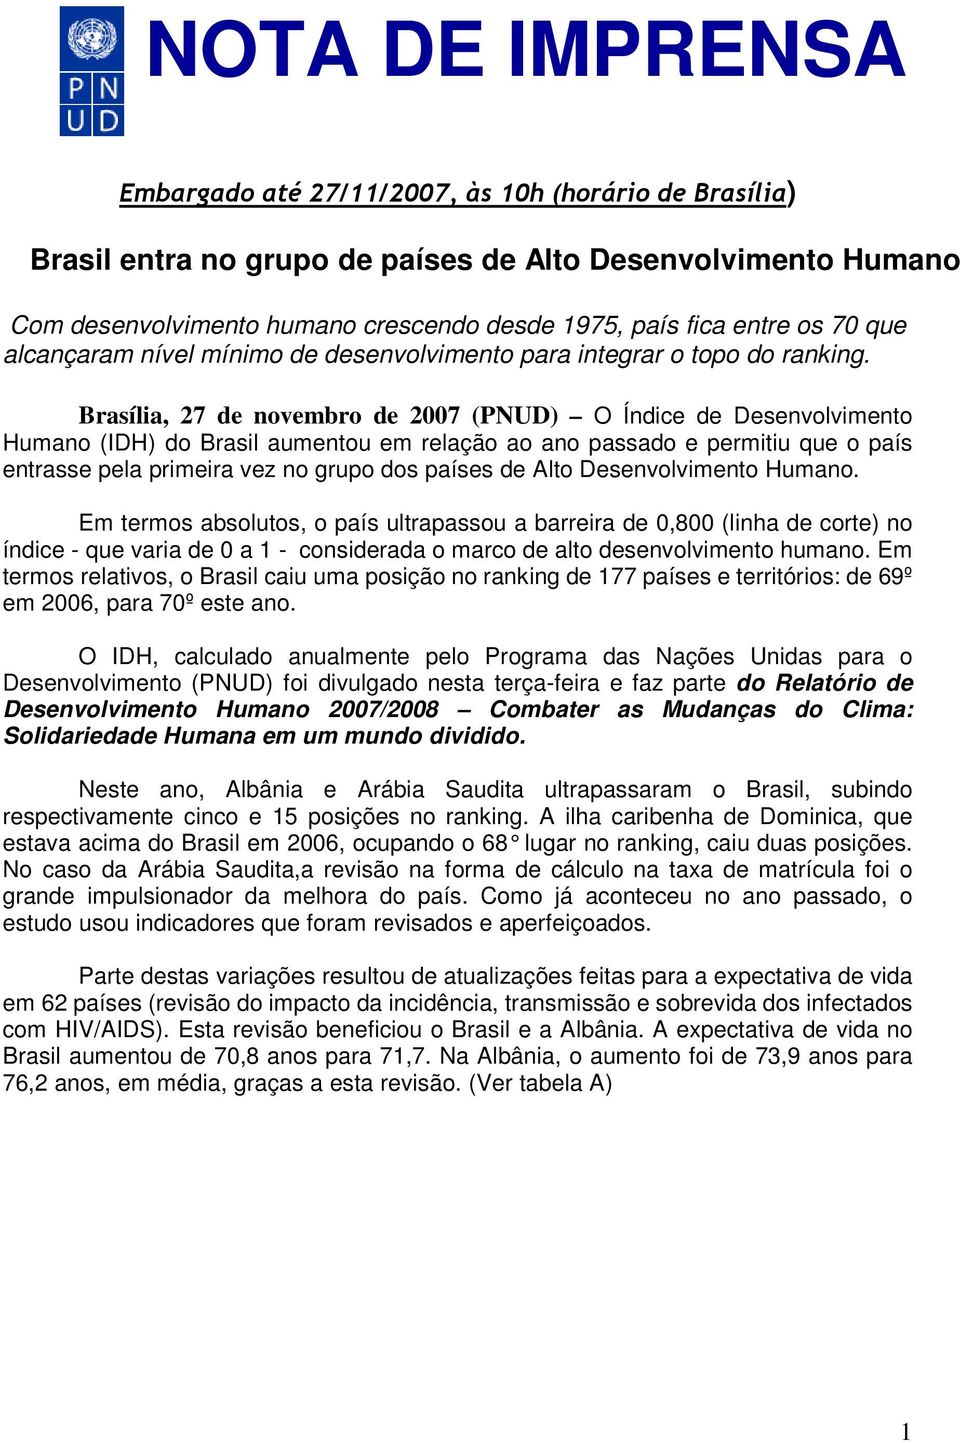 Brasília, 27 de novembro de 2007 (PNUD) O Índice de Desenvolvimento Humano (IDH) do Brasil aumentou em relação ao ano passado e permitiu que o país entrasse pela primeira vez no grupo dos países de